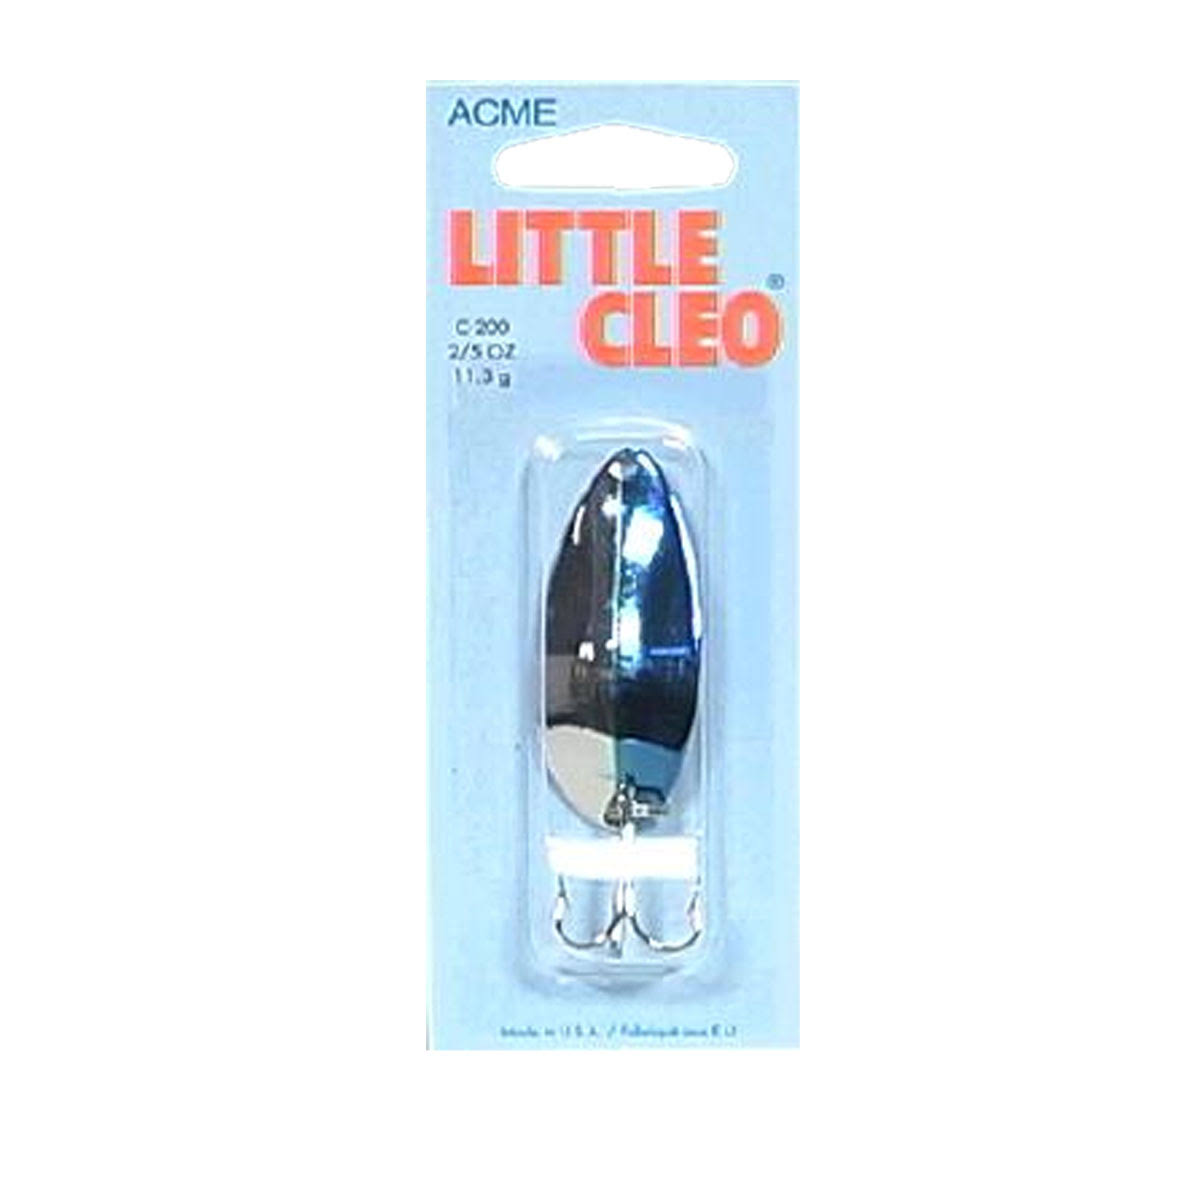 Acme Little Cleo Spoon - Nickel/Neon Blue, 2/5oz